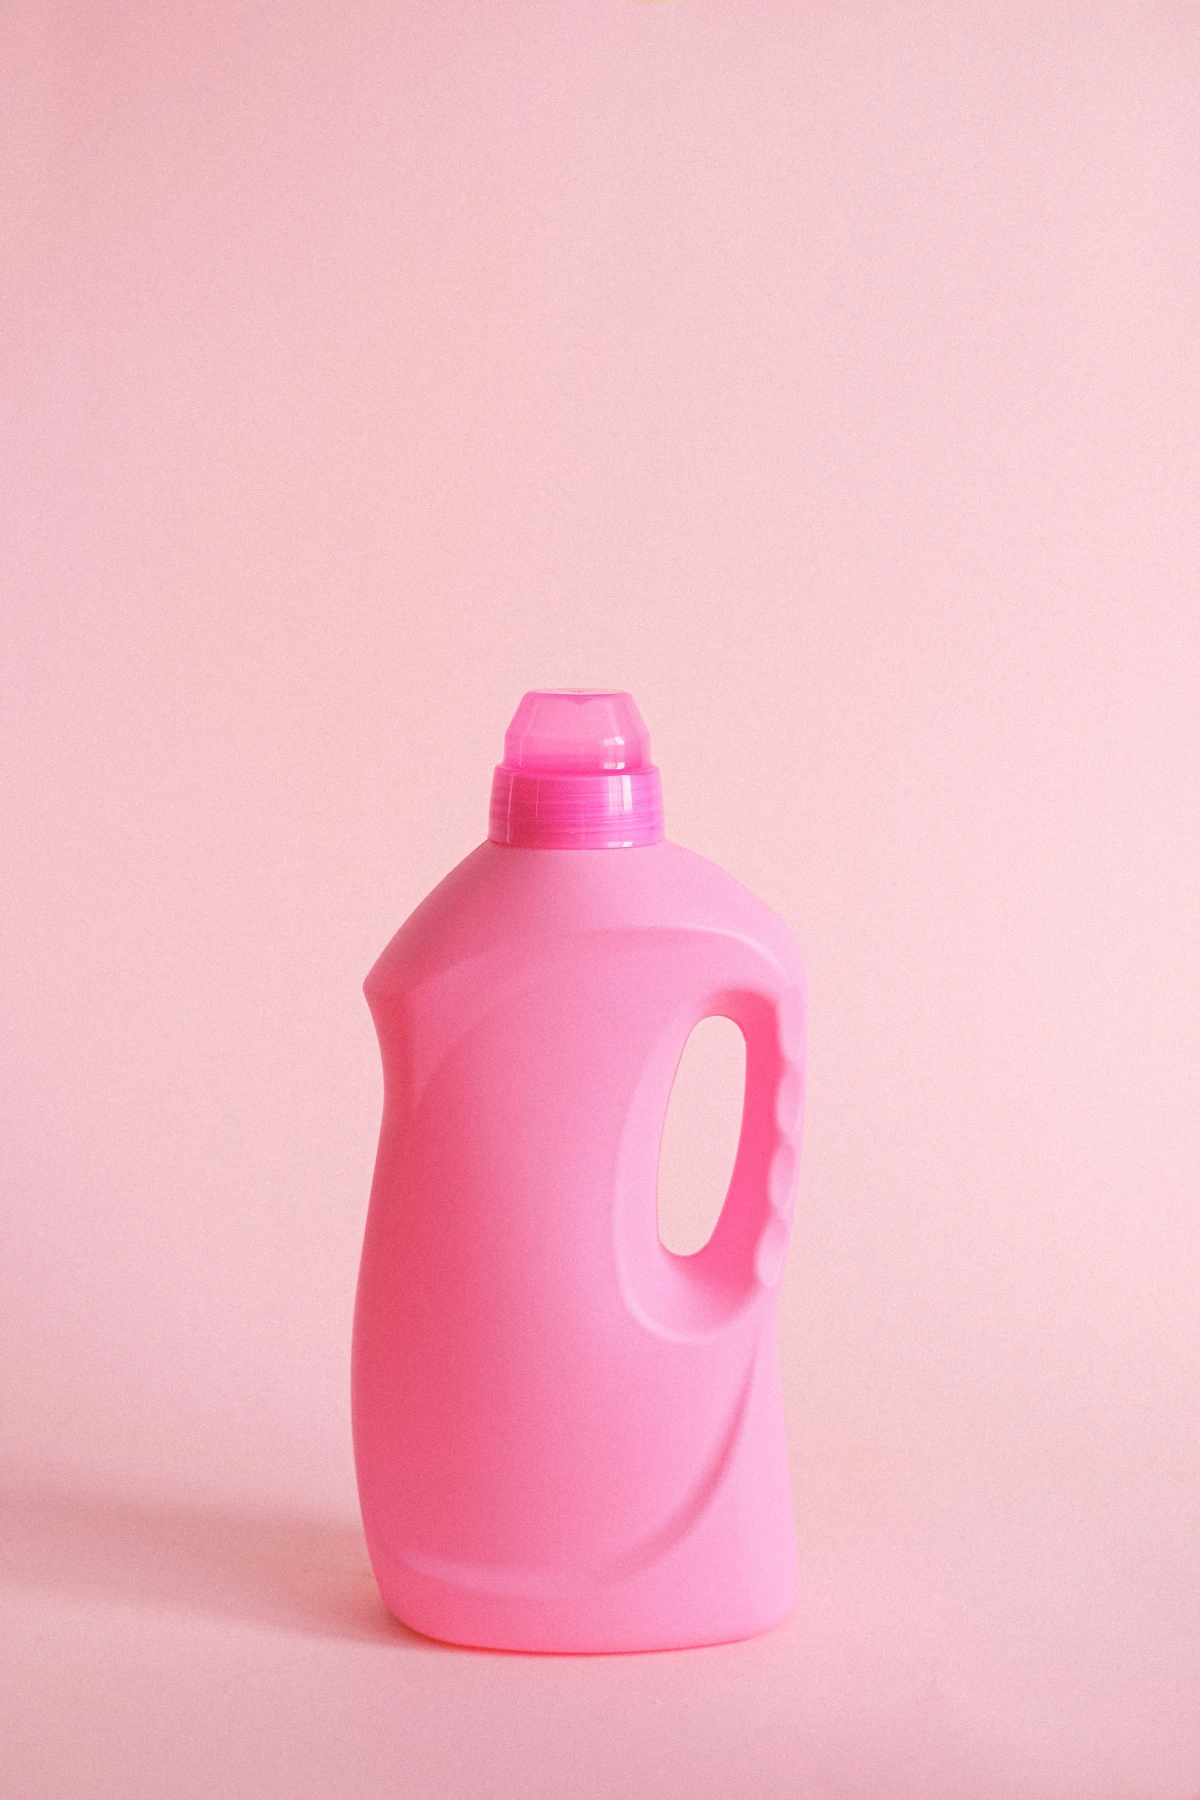 laundry detergent alternatives pink detergent bottle